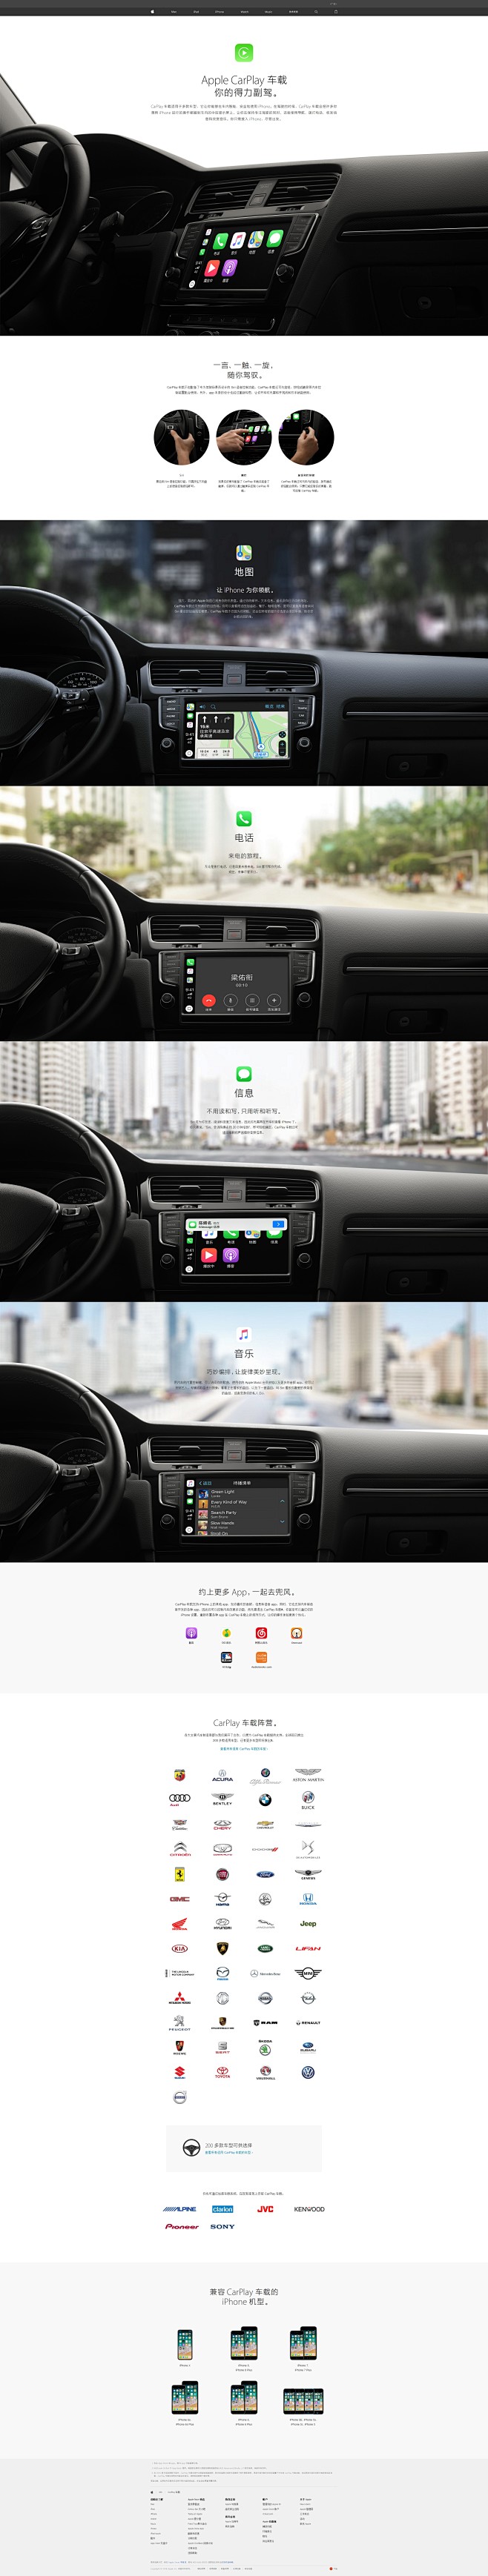 iOS - CarPlay 车载 - A...